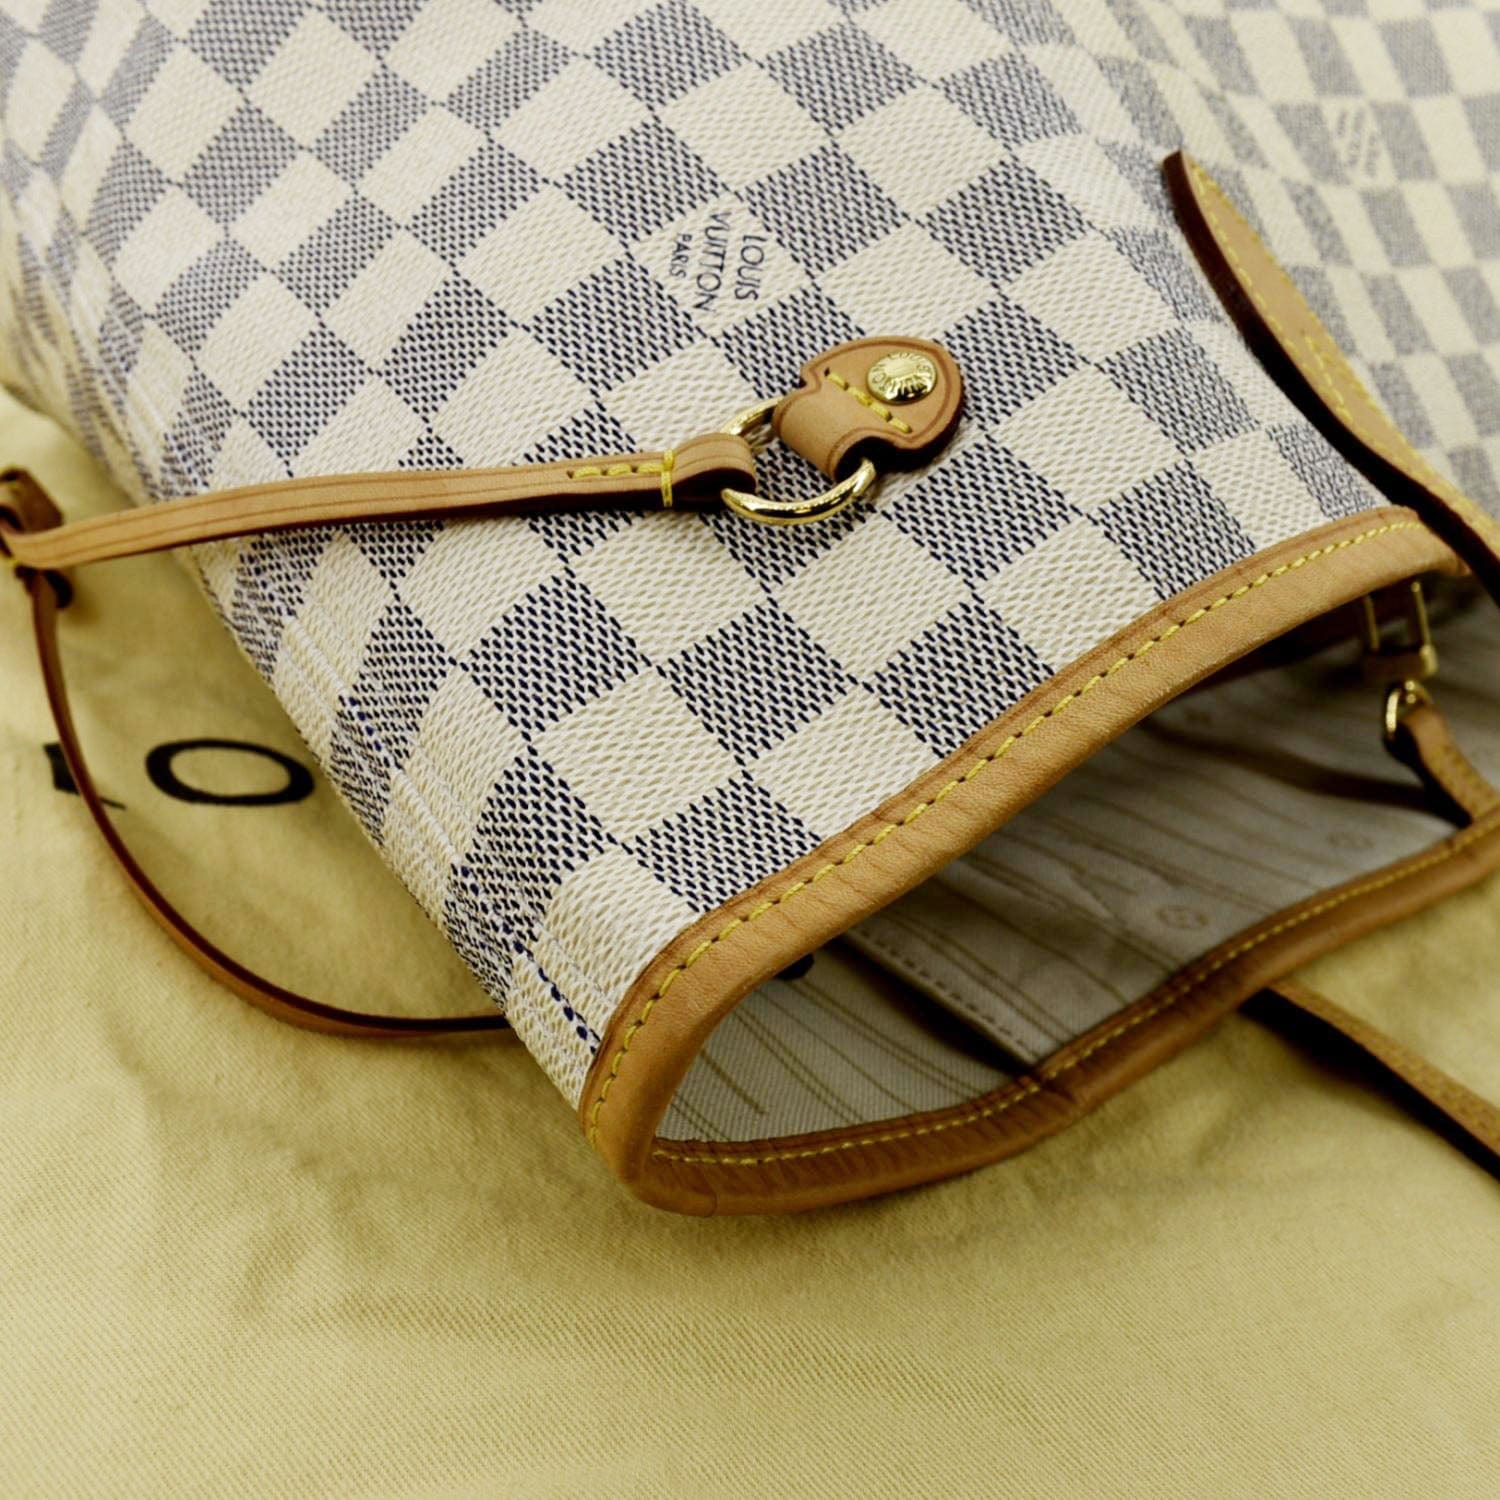 Louis Vuitton Neverfull Damier Azur Shoulder Bag